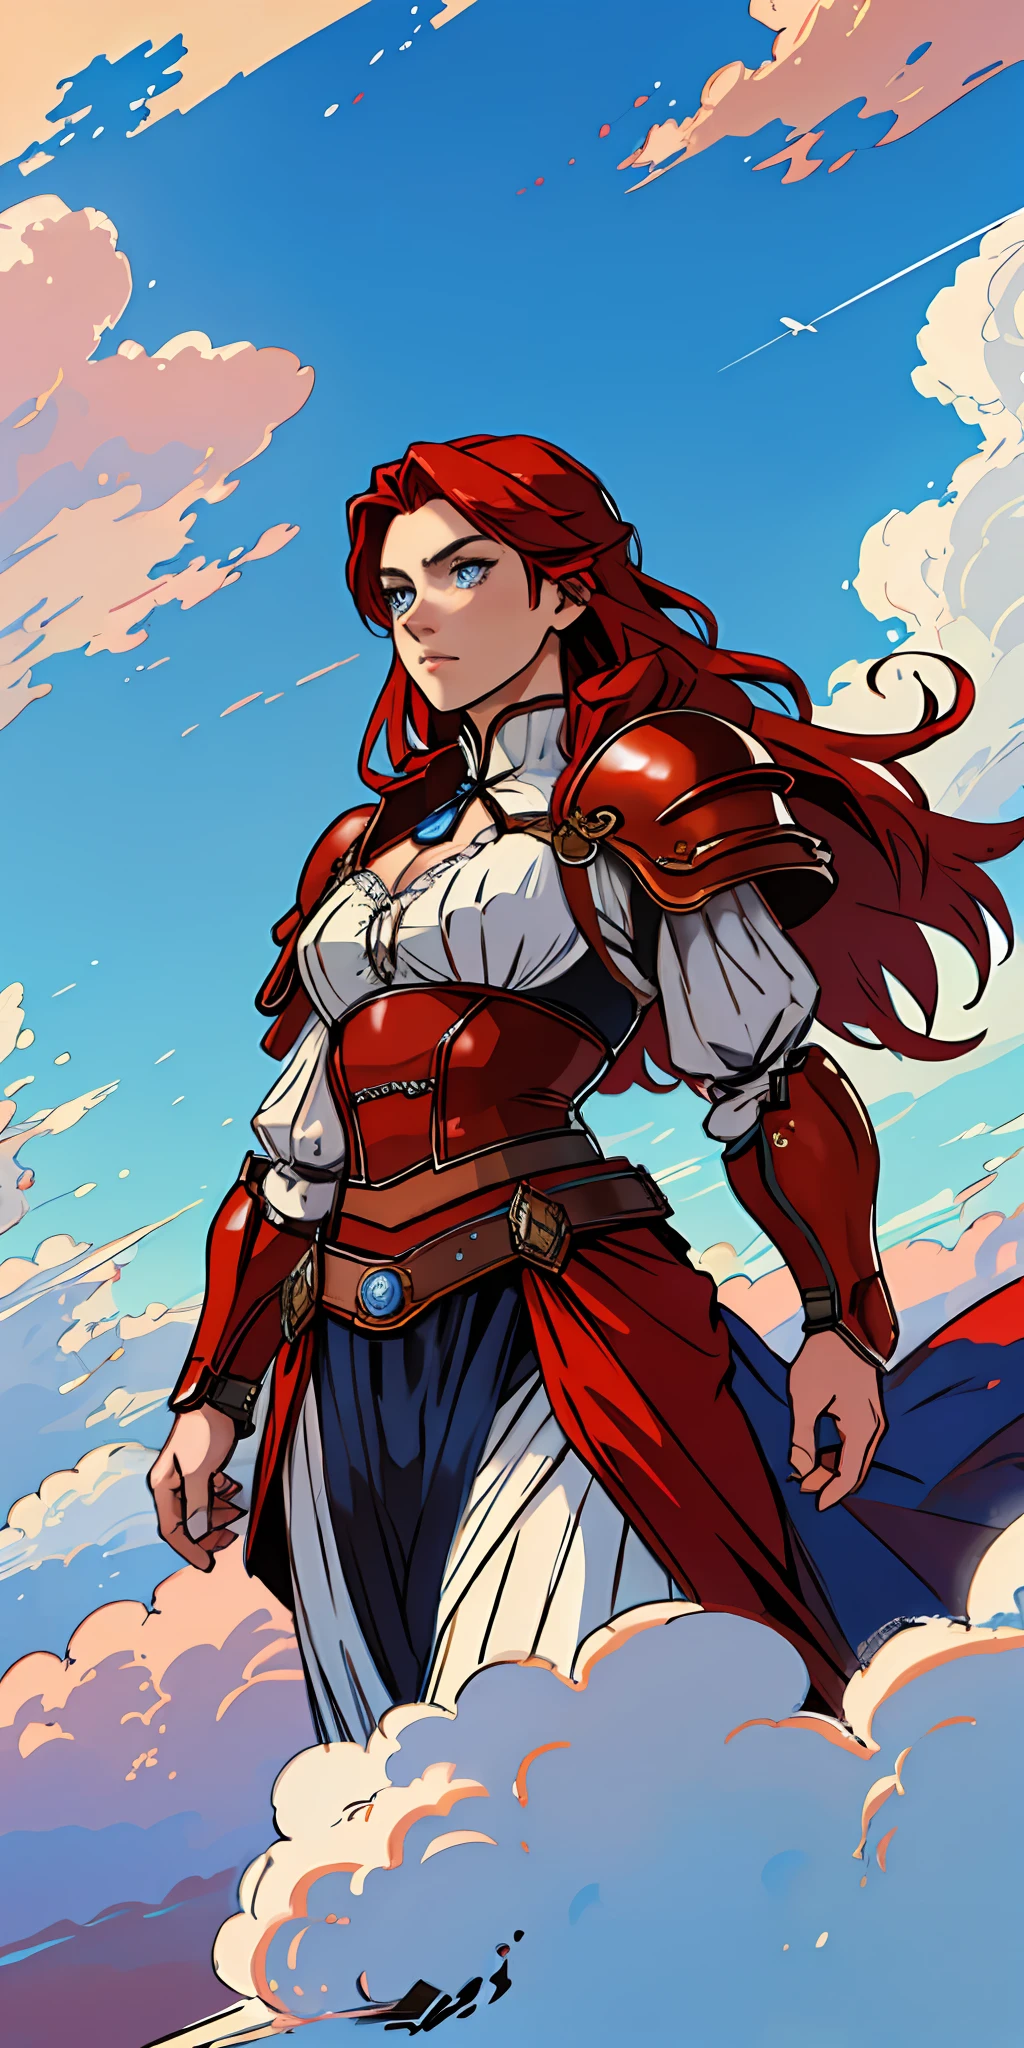 女战士, 长长的红头发, 蓝眼睛, 动态姿势, 穿着维多利亚时代的盔甲, ((背景: 天空充满云朵))